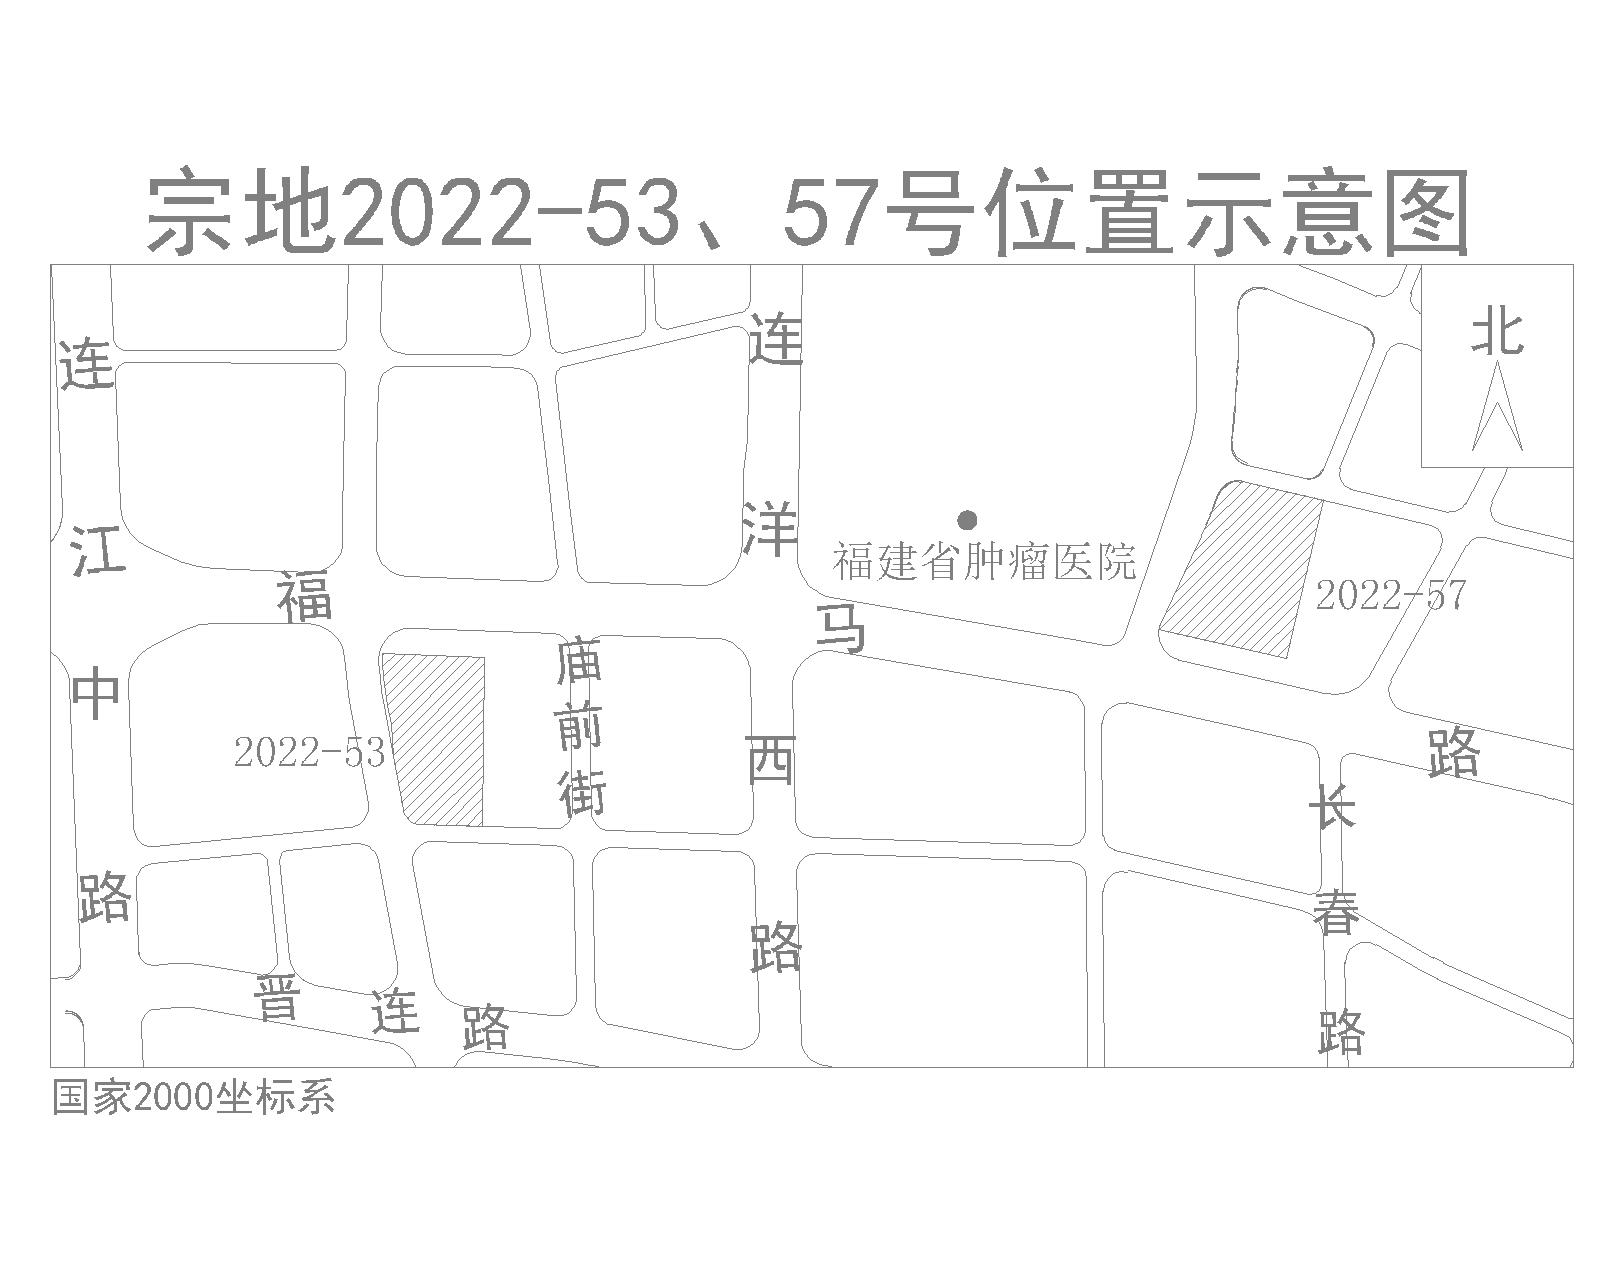 2022年福州第四次土拍公告发布 上海西新村三地块入围